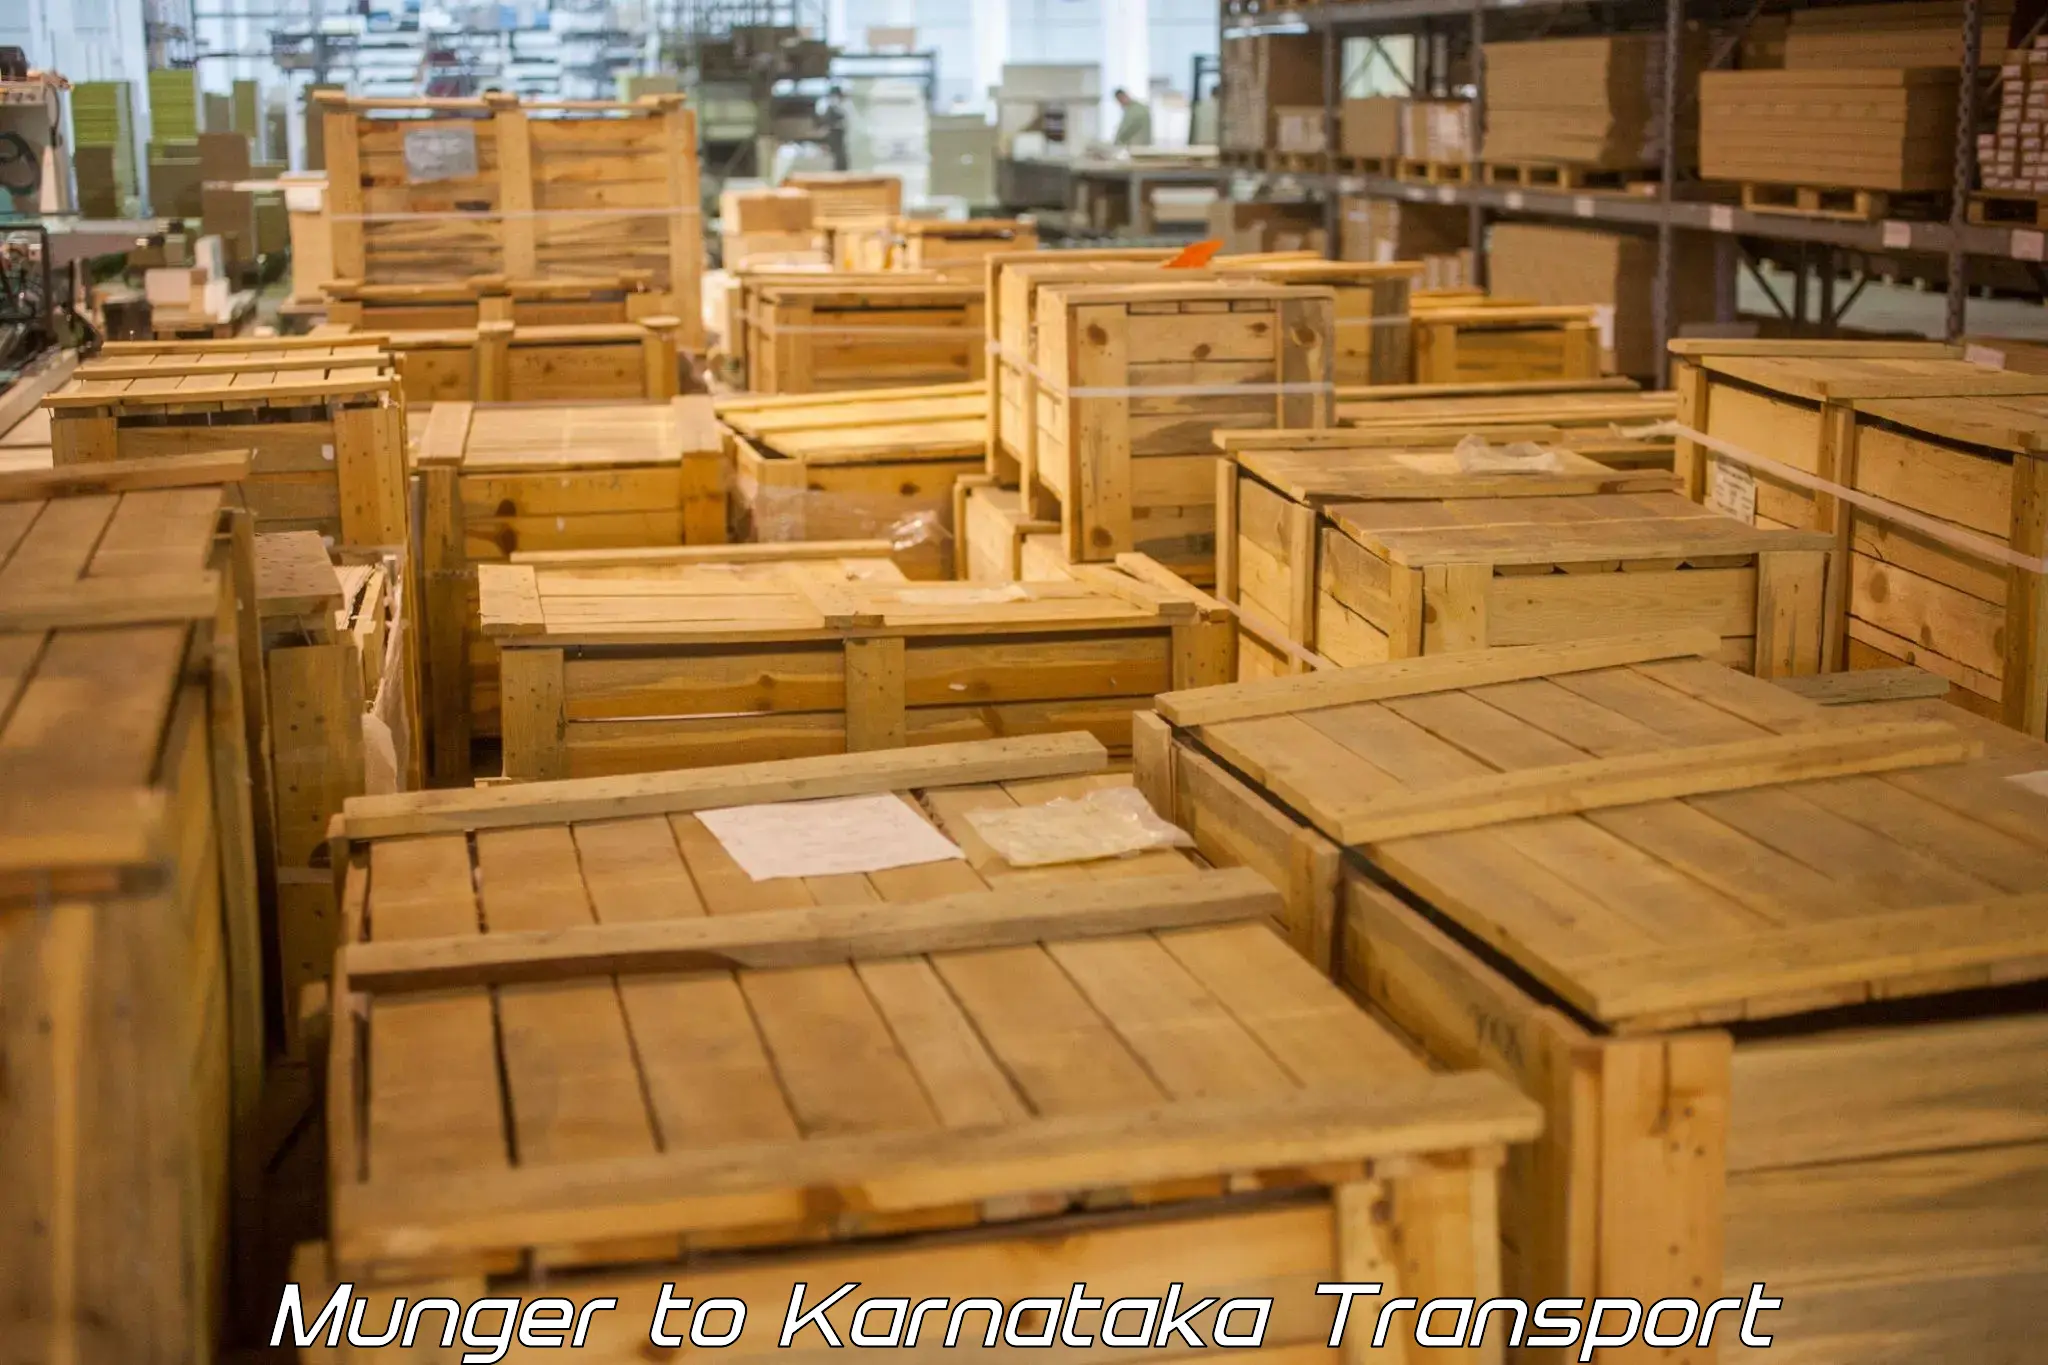 Daily parcel service transport Munger to Karnataka